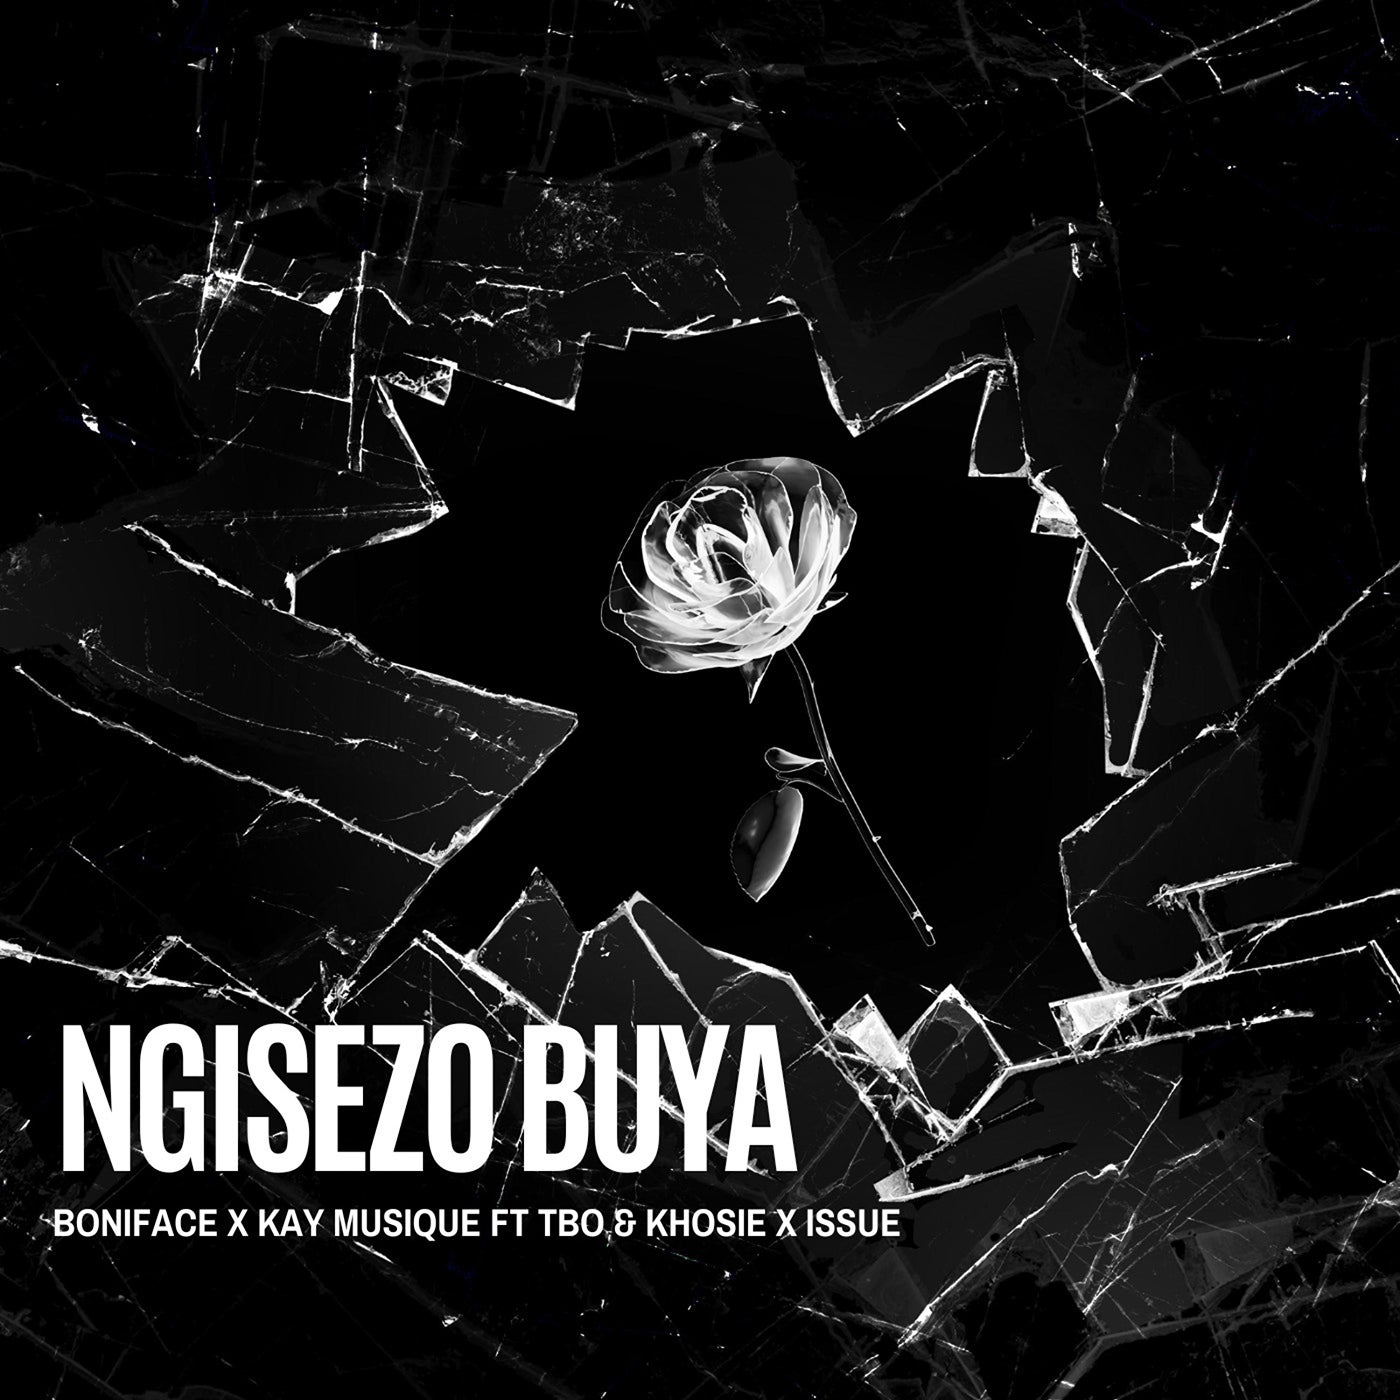 Ngisezo Buya (feat. TBO, Khosie, Issue)